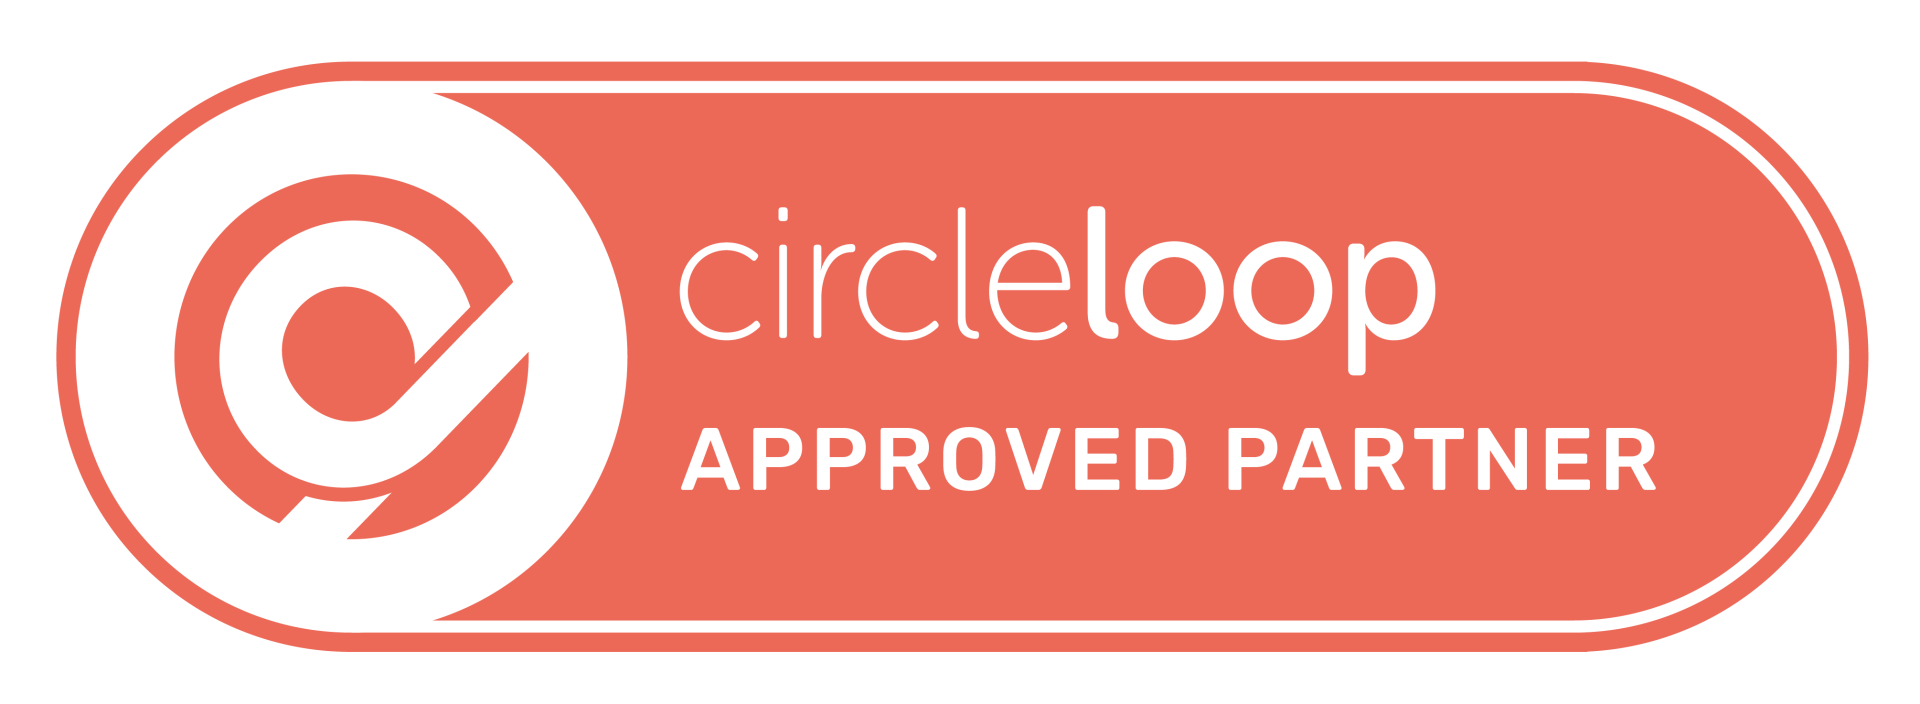 Sigoti becomes CircleLoop Approved Partner